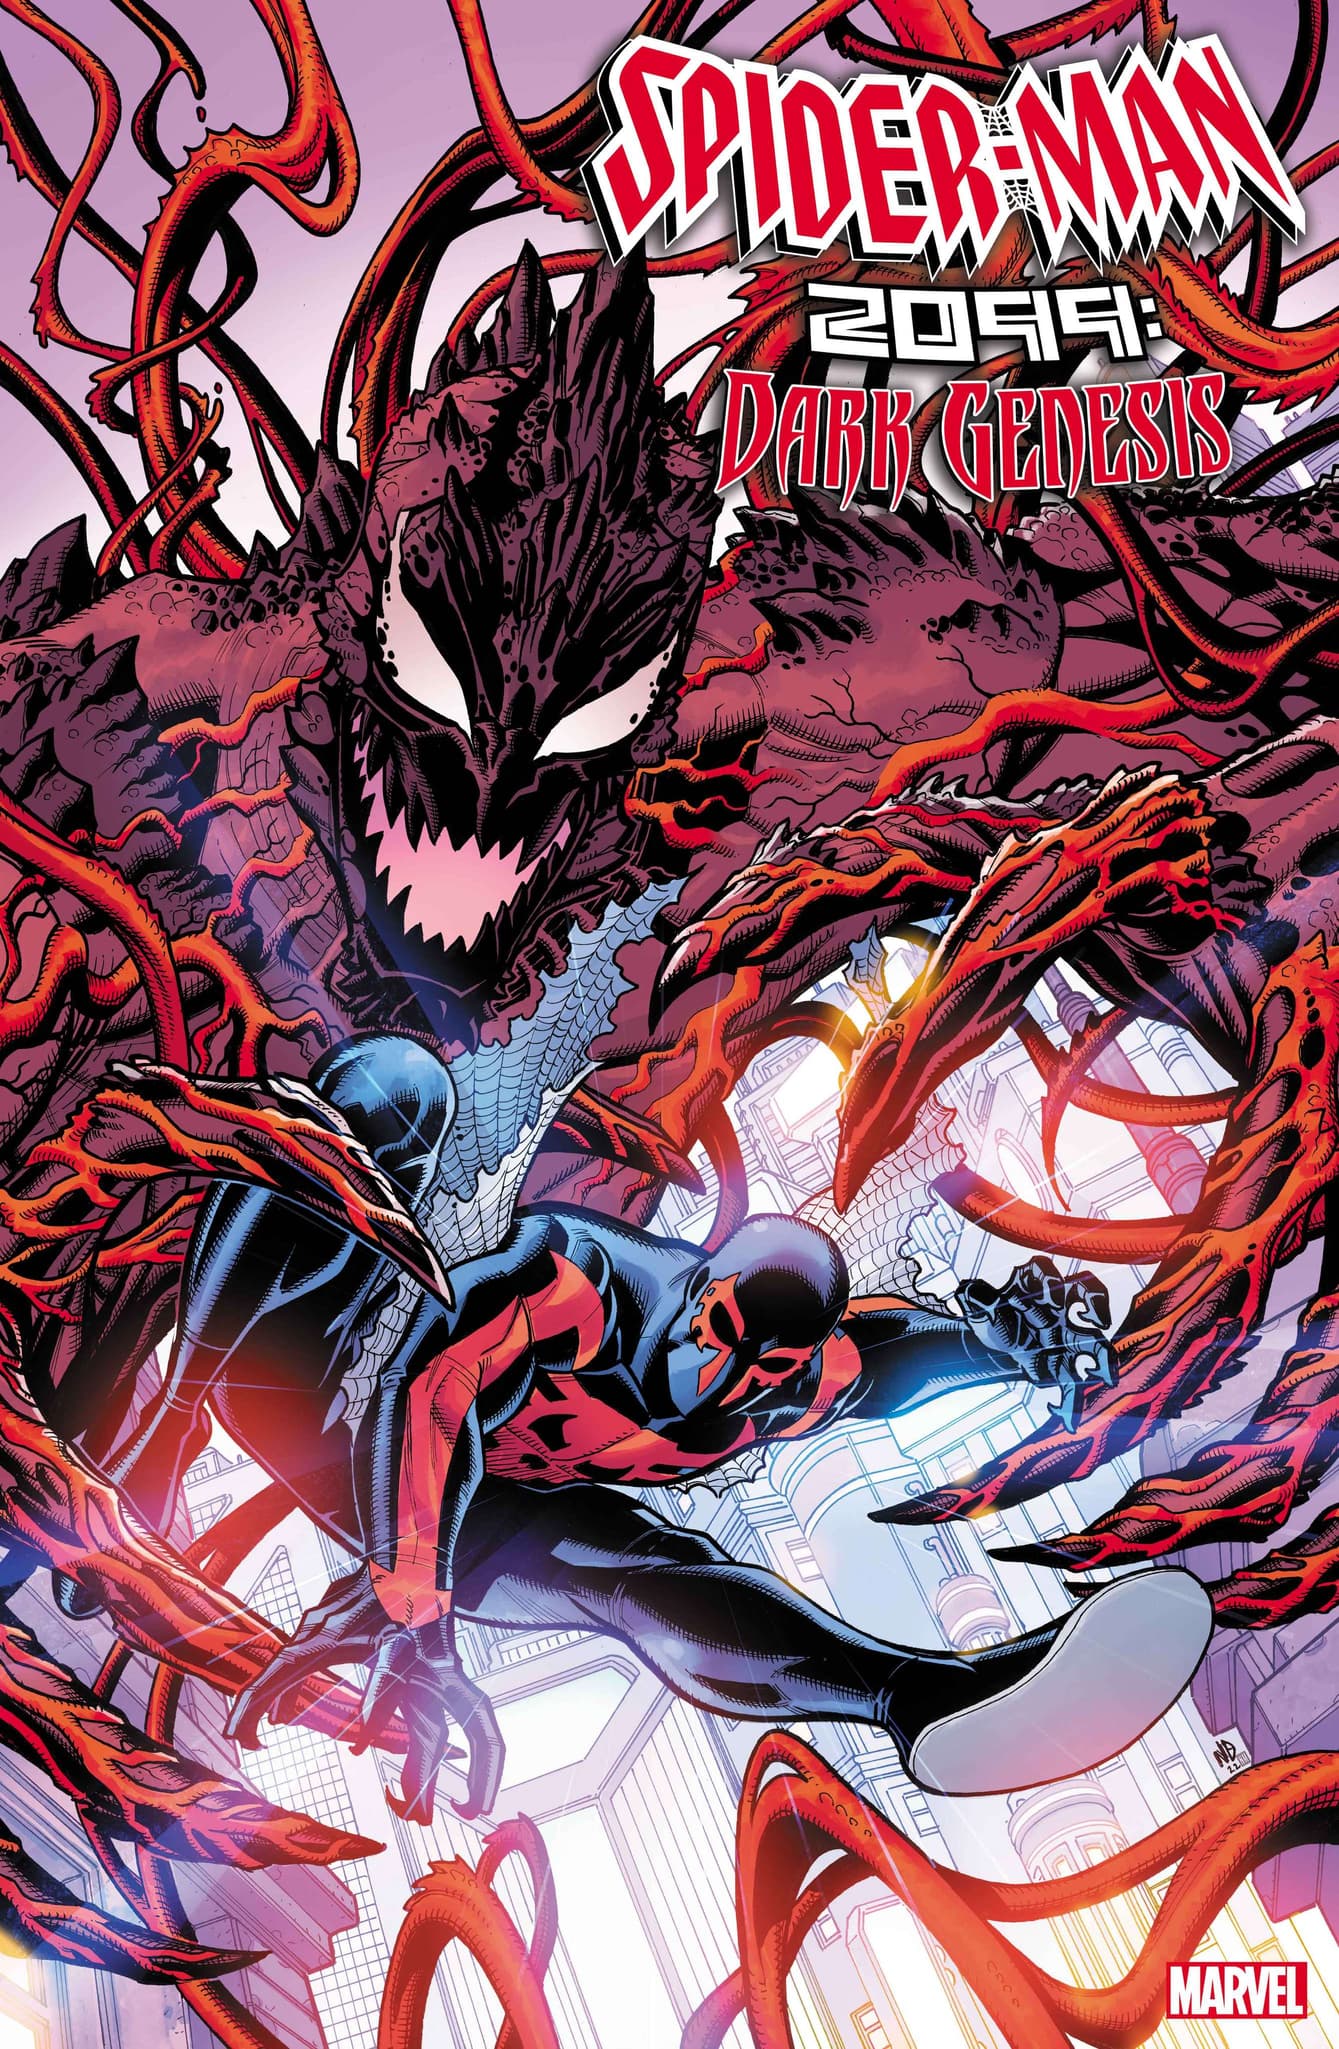 SPIDER-MAN 2099: DARK GENESIS #1 cover by Nick Bradshaw